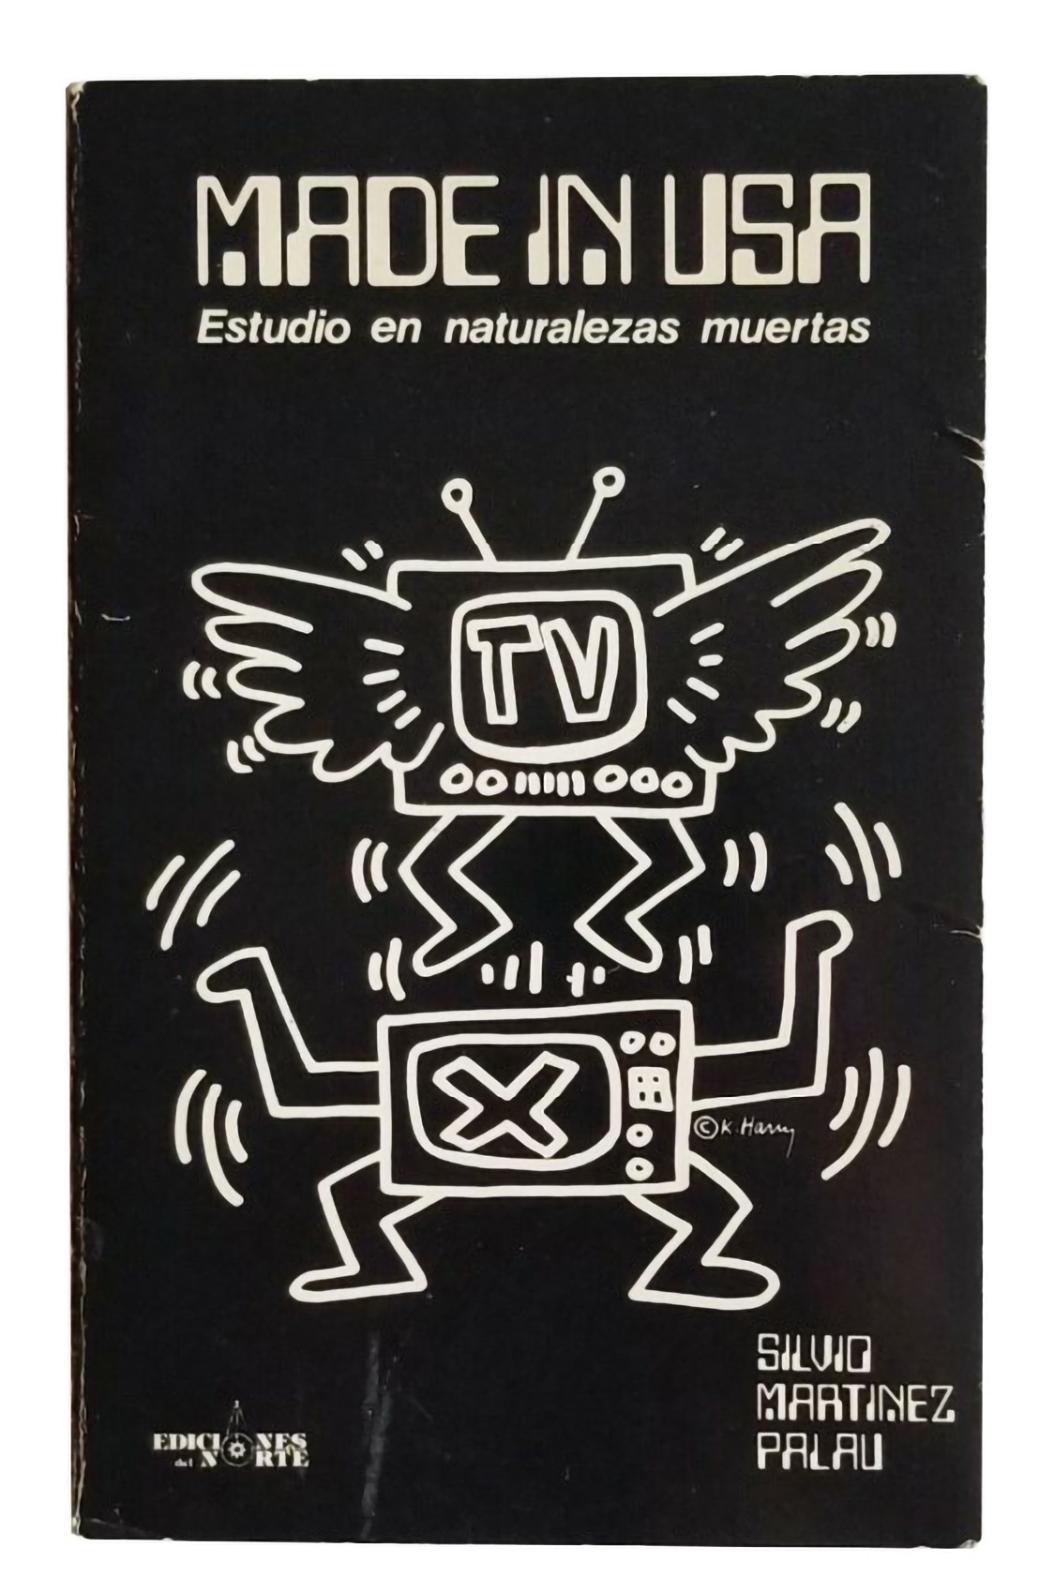 Keith Haring Cover Art 1986 :
Une rare publication d'art de 1986 à collectionner, avec une couverture exceptionnelle de Keith Haring.

Couverture imprimée en offset et illustrations intérieures ; couverture souple ; 150+ pages. Texte en